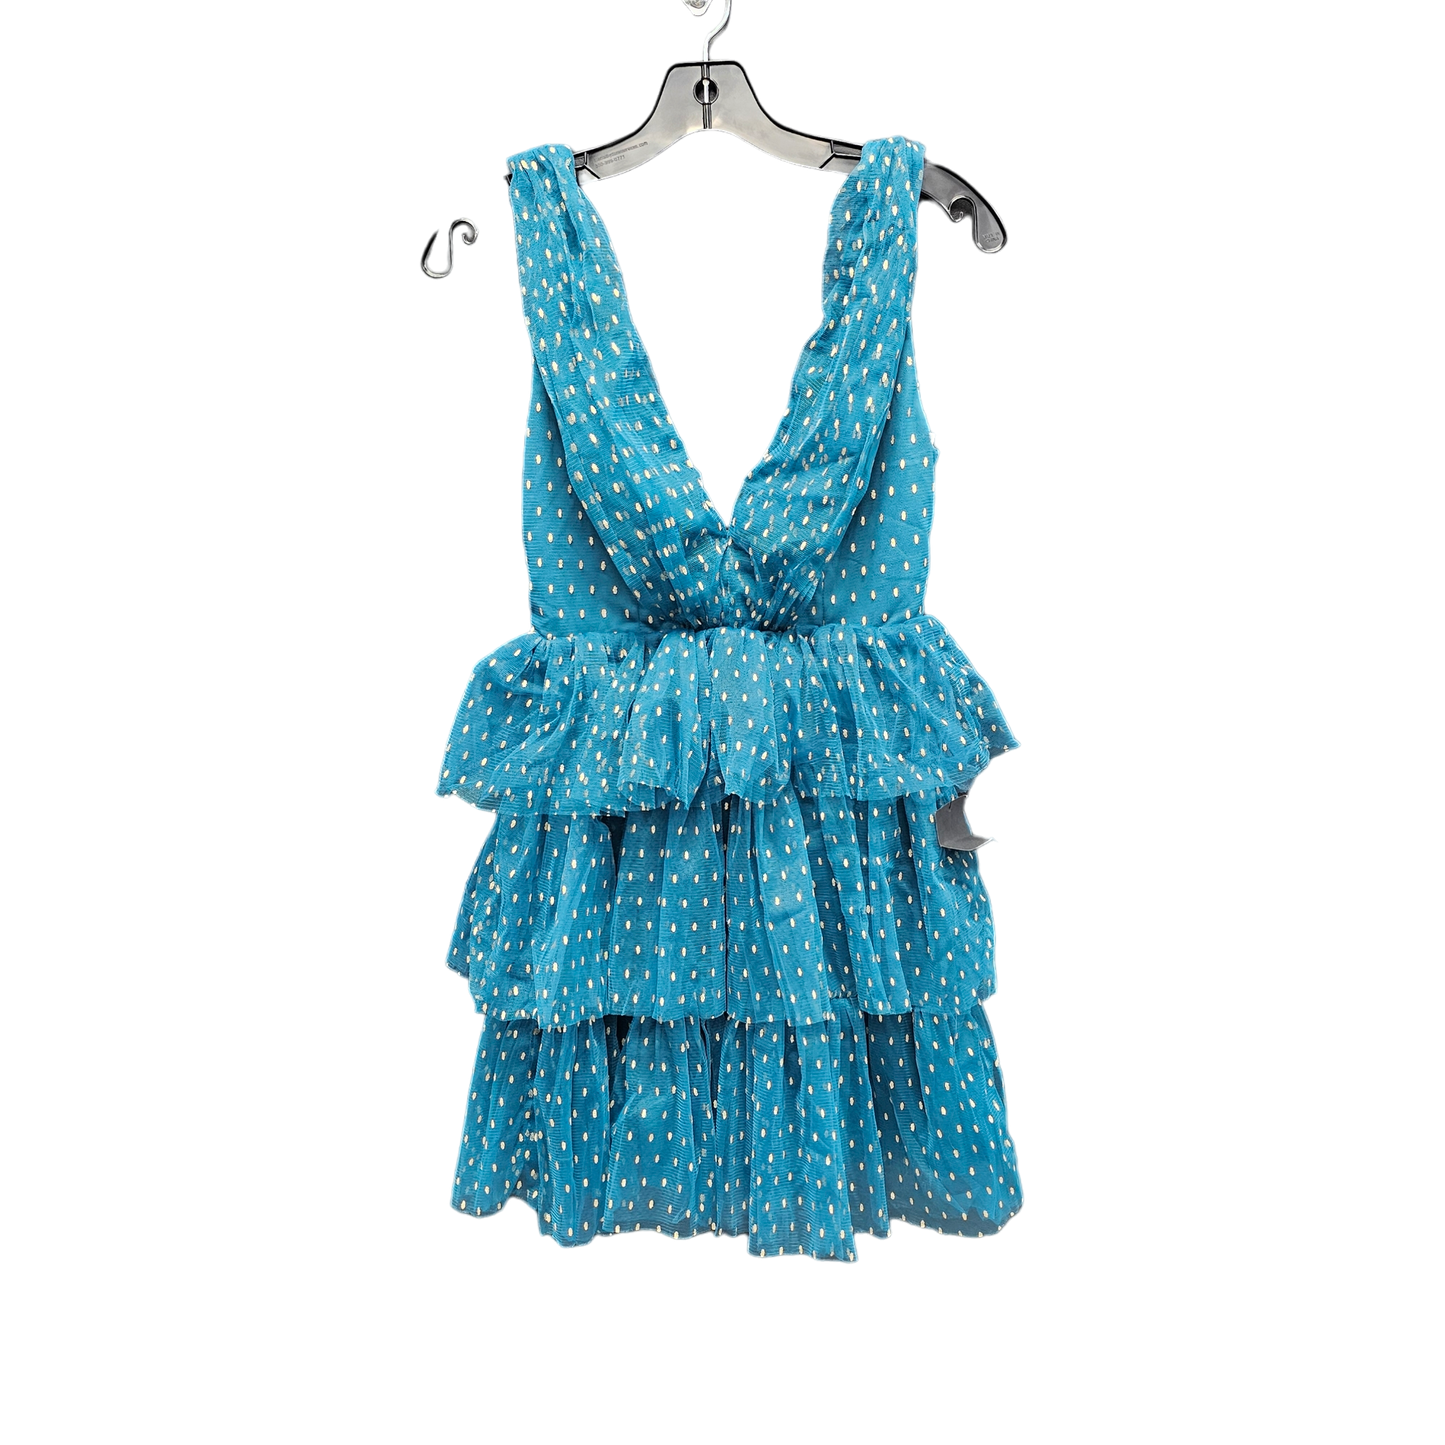 Polkadot Pattern Dress Casual Short Lulu, Size S